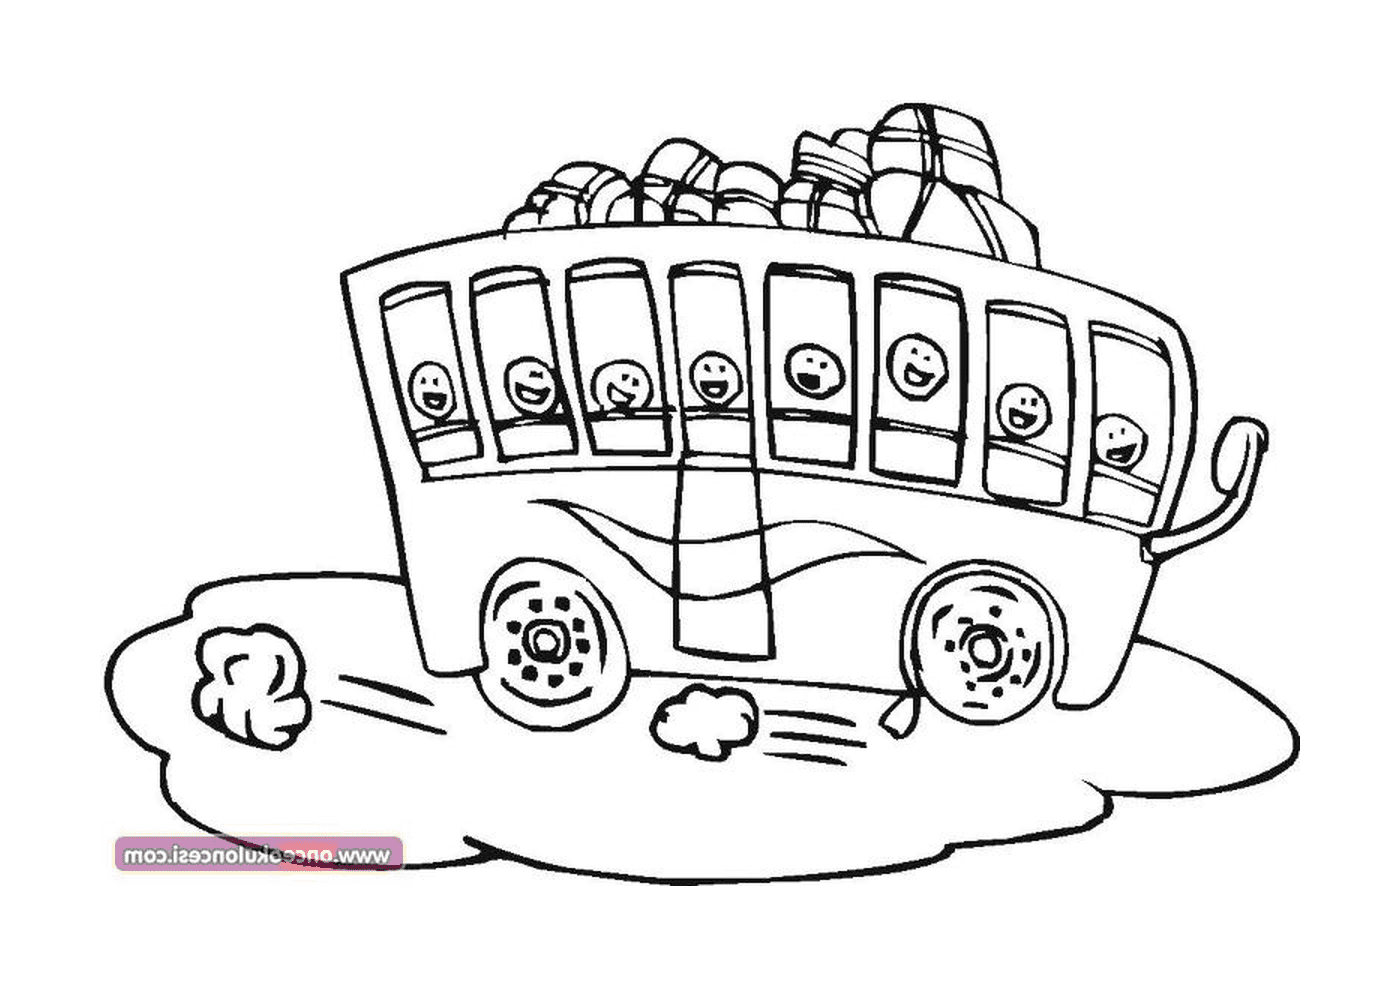  Um ônibus com muitas faces desenhadas sobre ele 